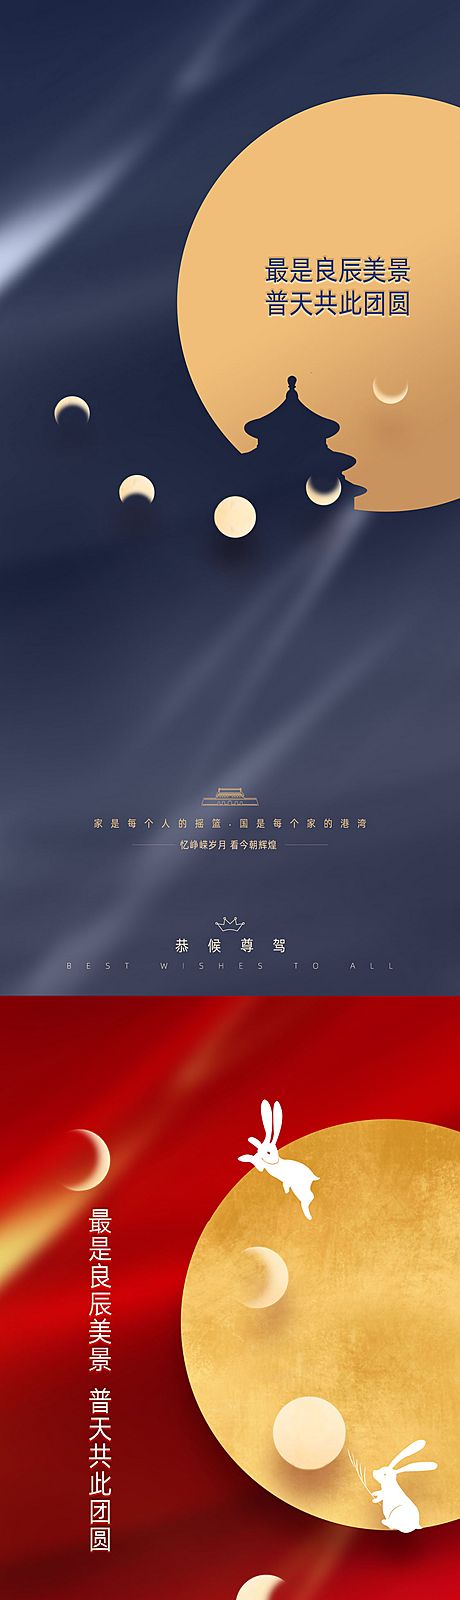 仙图网-中秋节国庆节系列海报